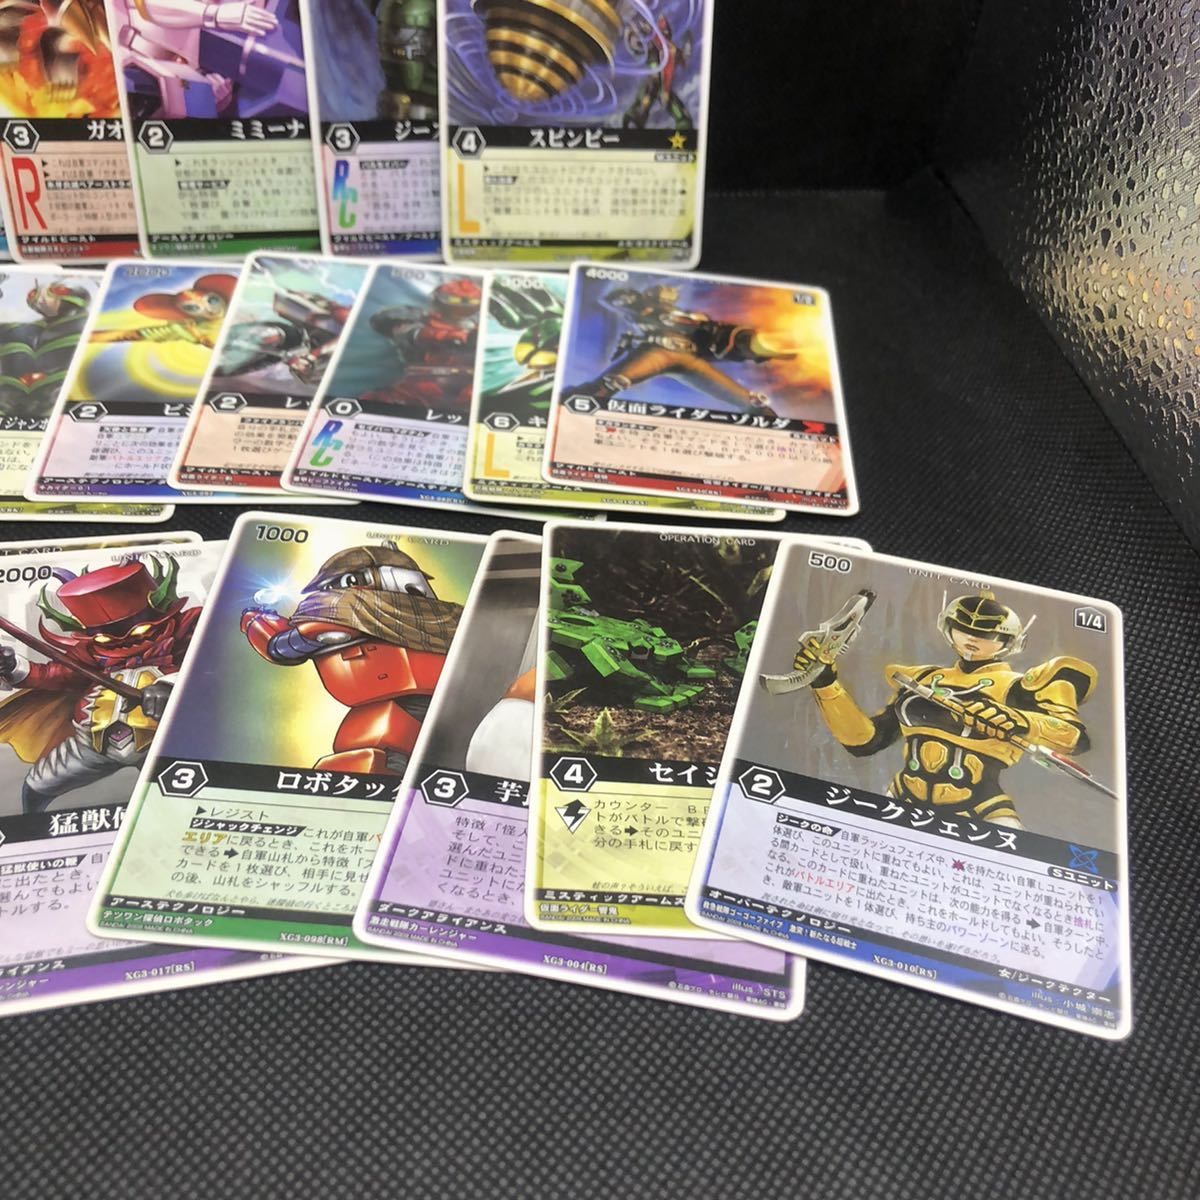  Ranger Strike коллекционная карточка продажа комплектом ti Kei do знак редкость есть 